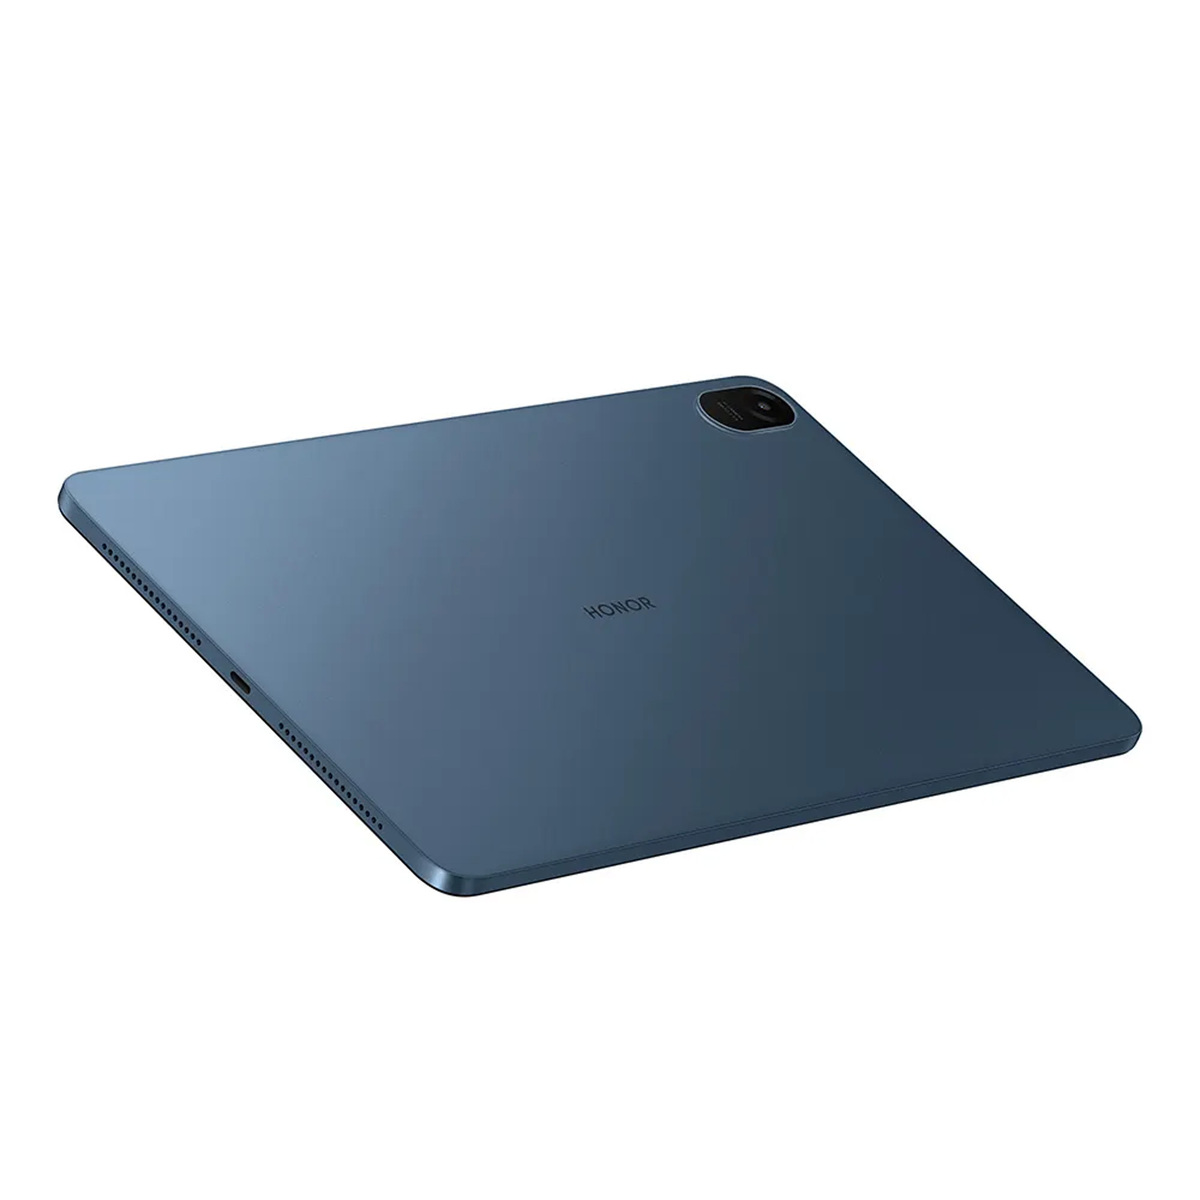 Honor Pad X8,Snapdragon 6225, 8GB RAM, 256GB SSD, 11.97" Tablet - Blue